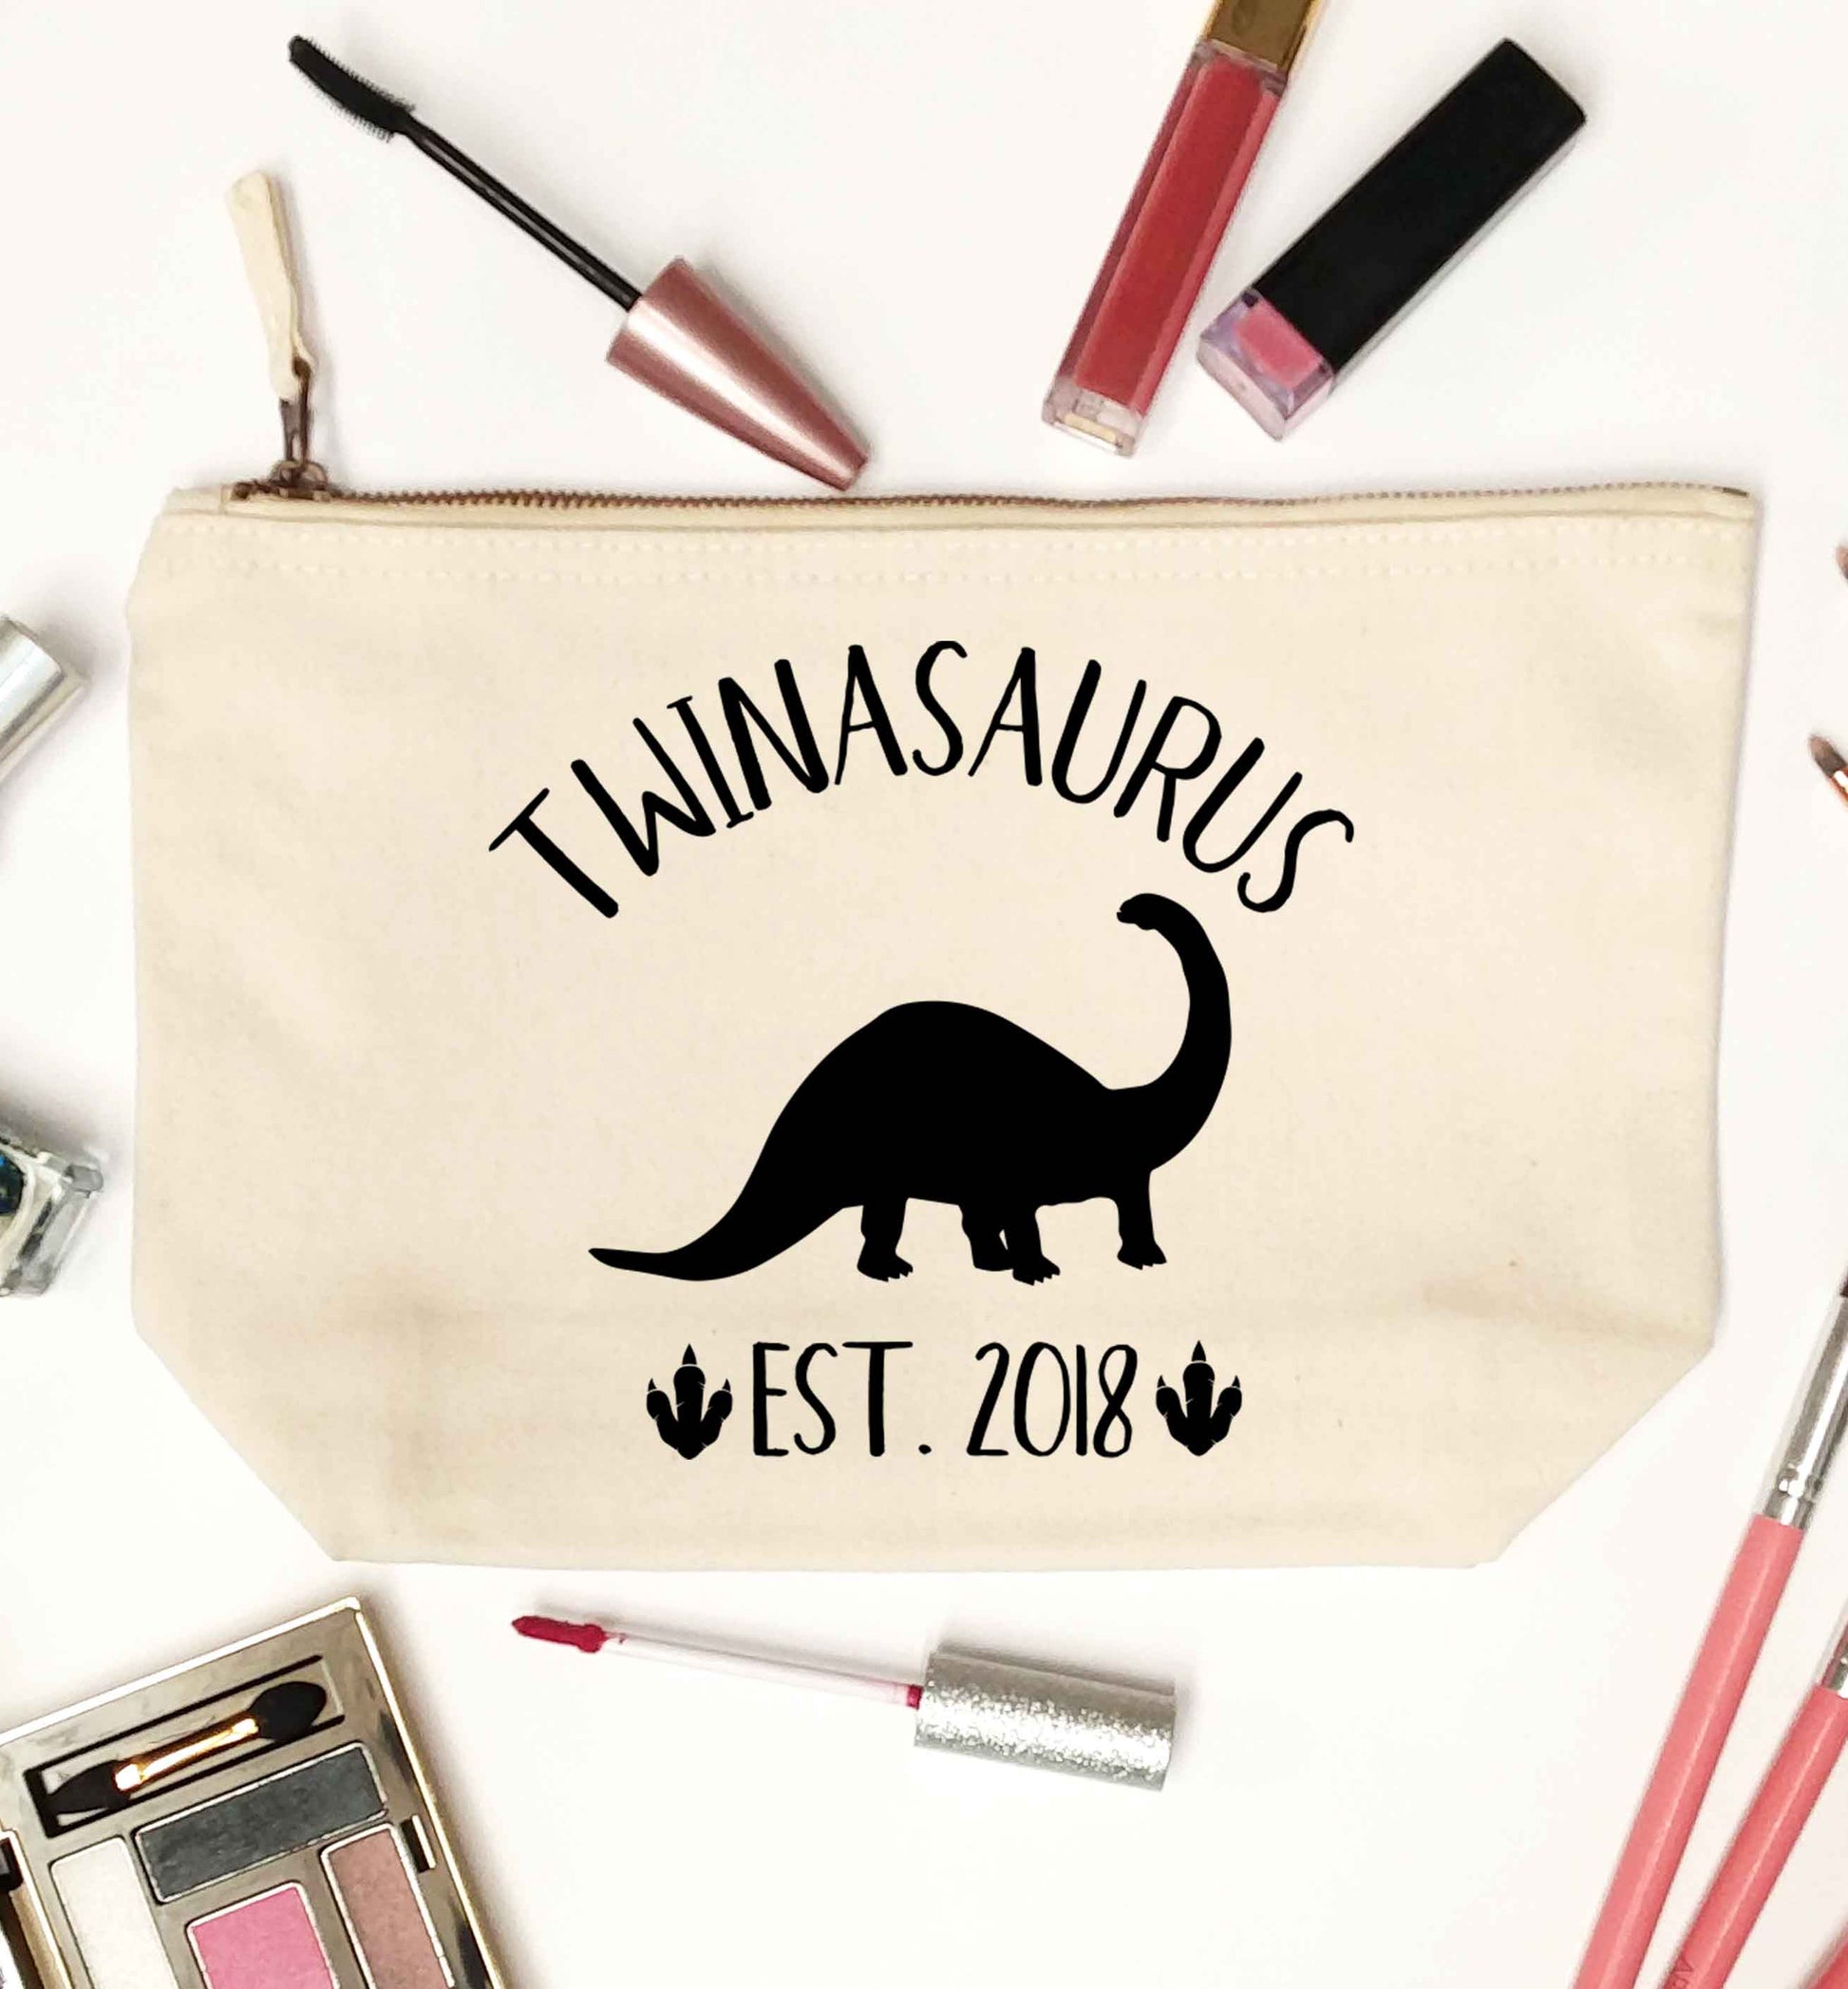 Personalised twinasaurus since (custom date) natural makeup bag